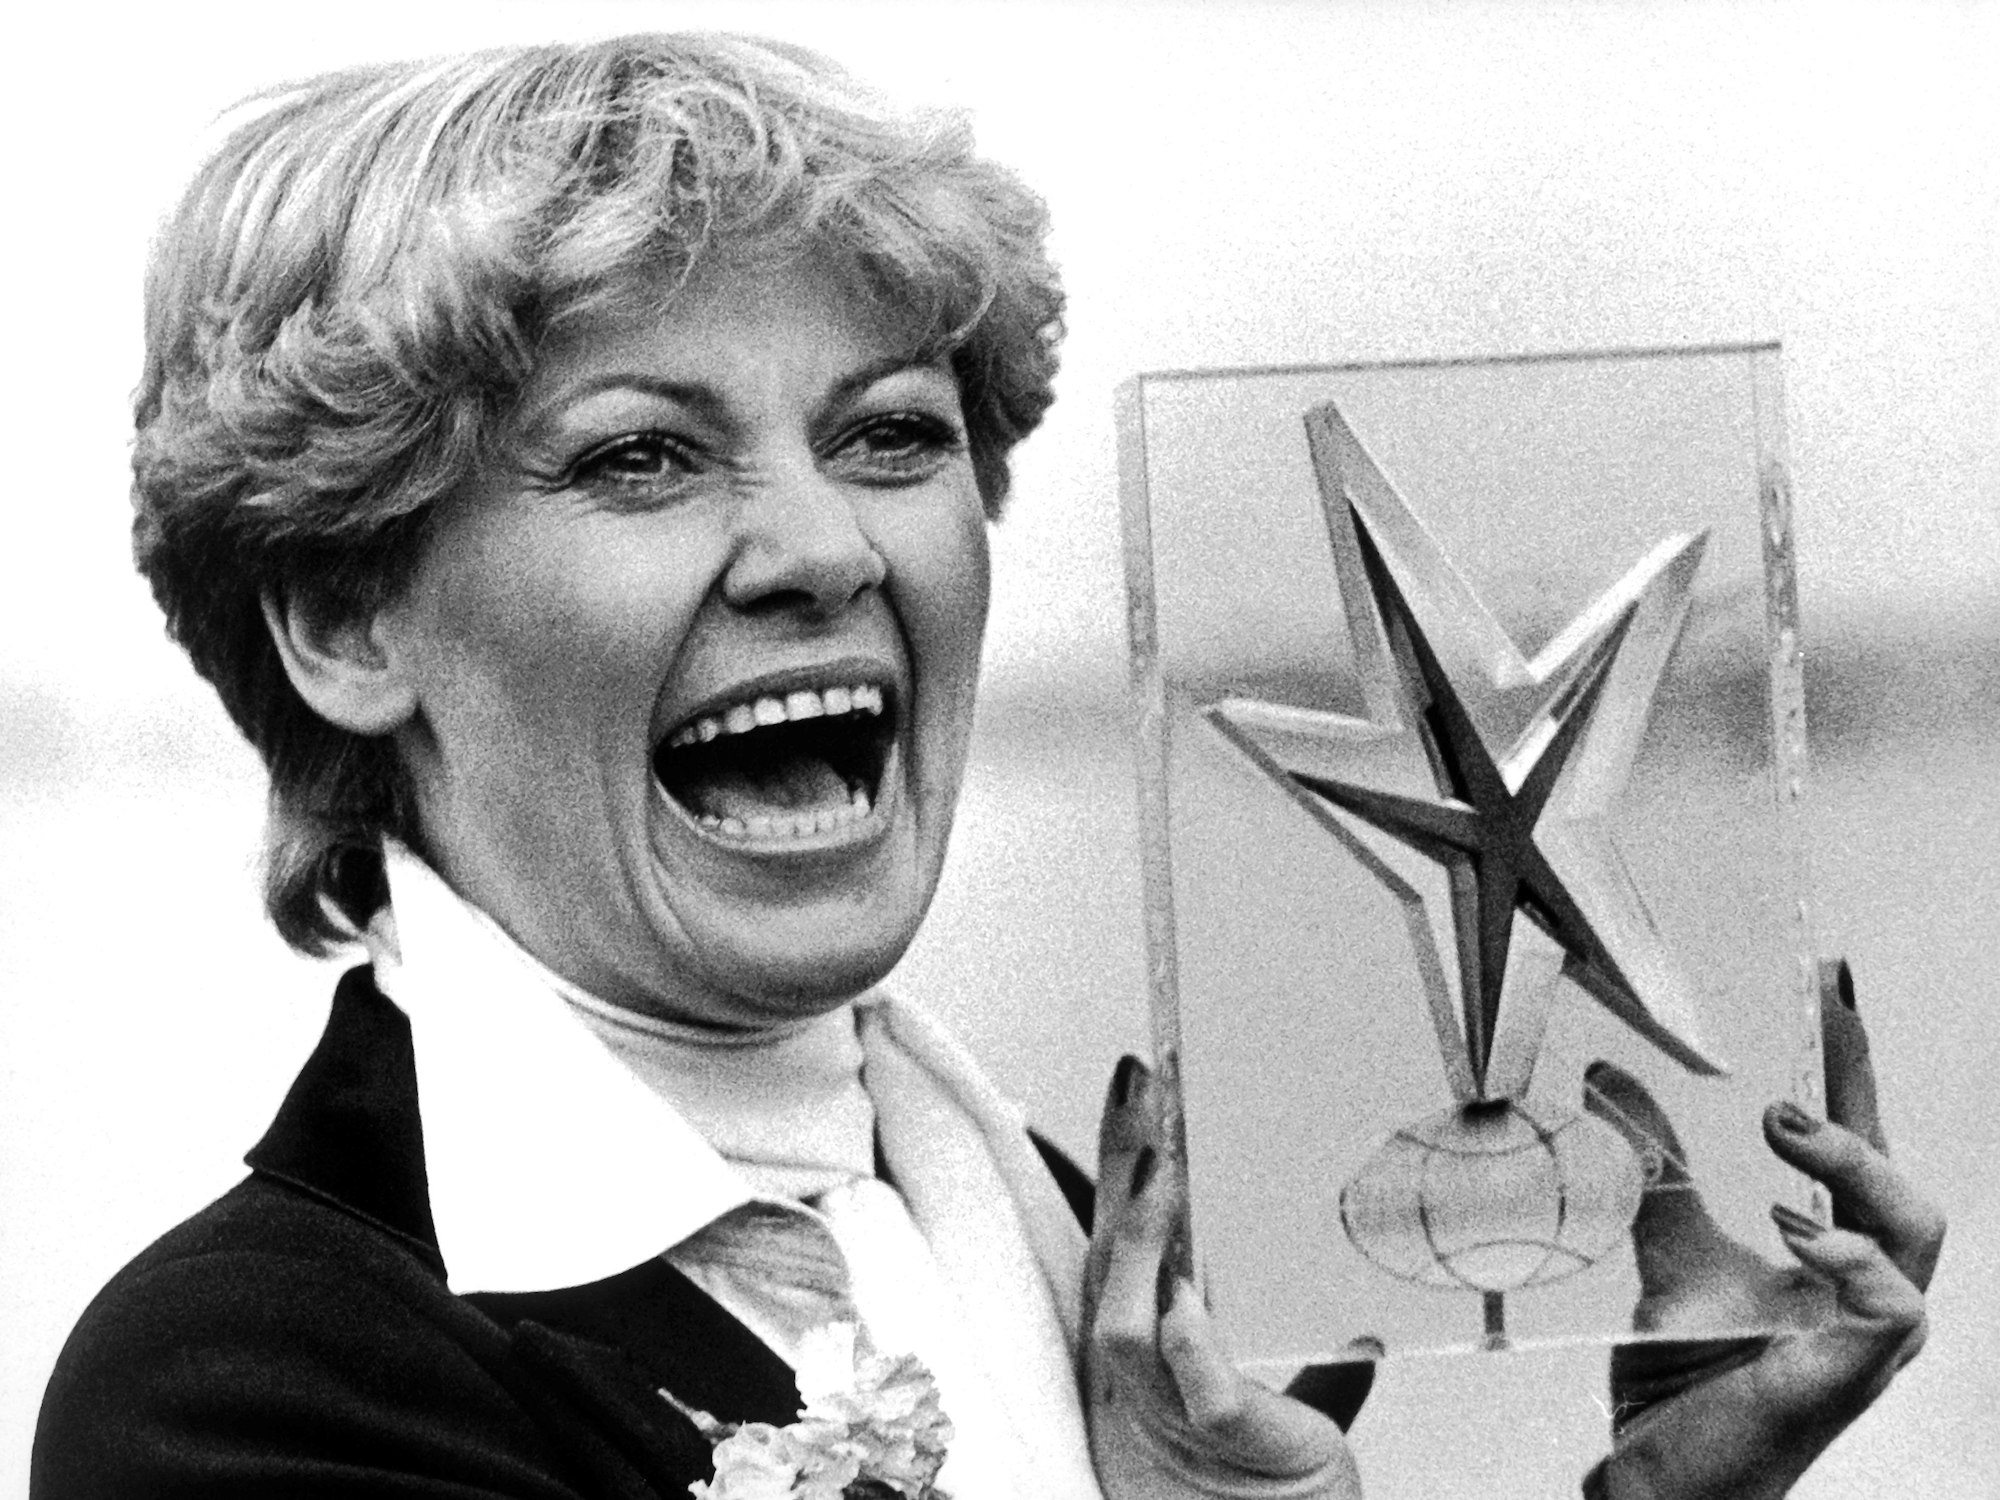 ARCHIV- Die dänische Schlagersängerin Gitte Haenning wird am 08.03.1976 in Hamburg mit dem „Goldenen Stern der ICD-Intercoiffure“ ausgezeichnet.